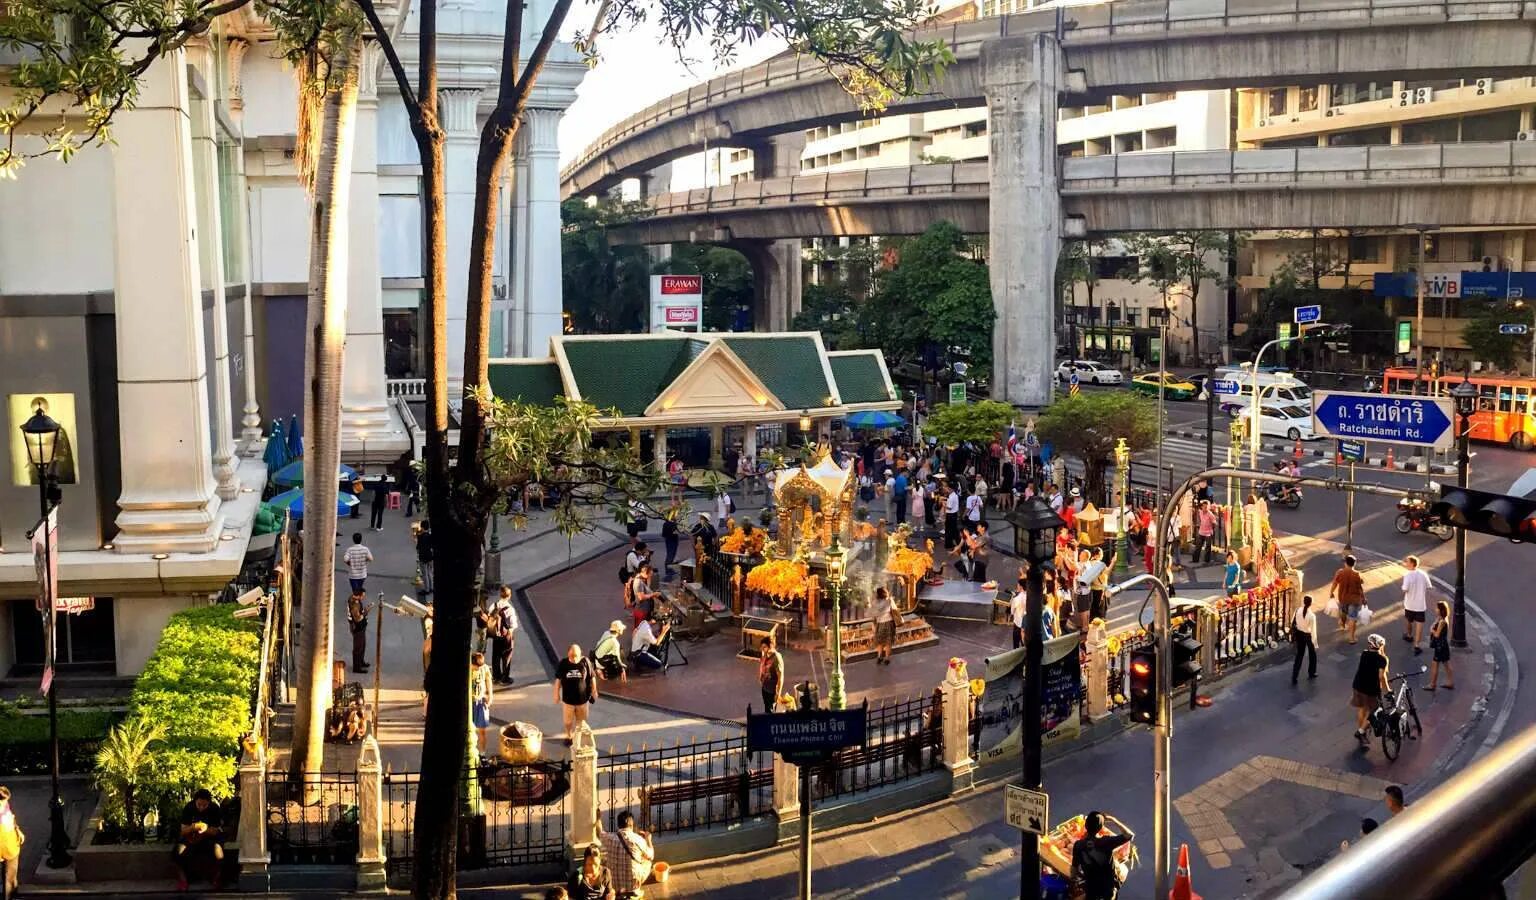 Площадь бангкока. Бангкок Сиам сквер. Бангкок площадь. Площадь Сиам. Такси на площади Сиам, Бангкок, Таиланд.